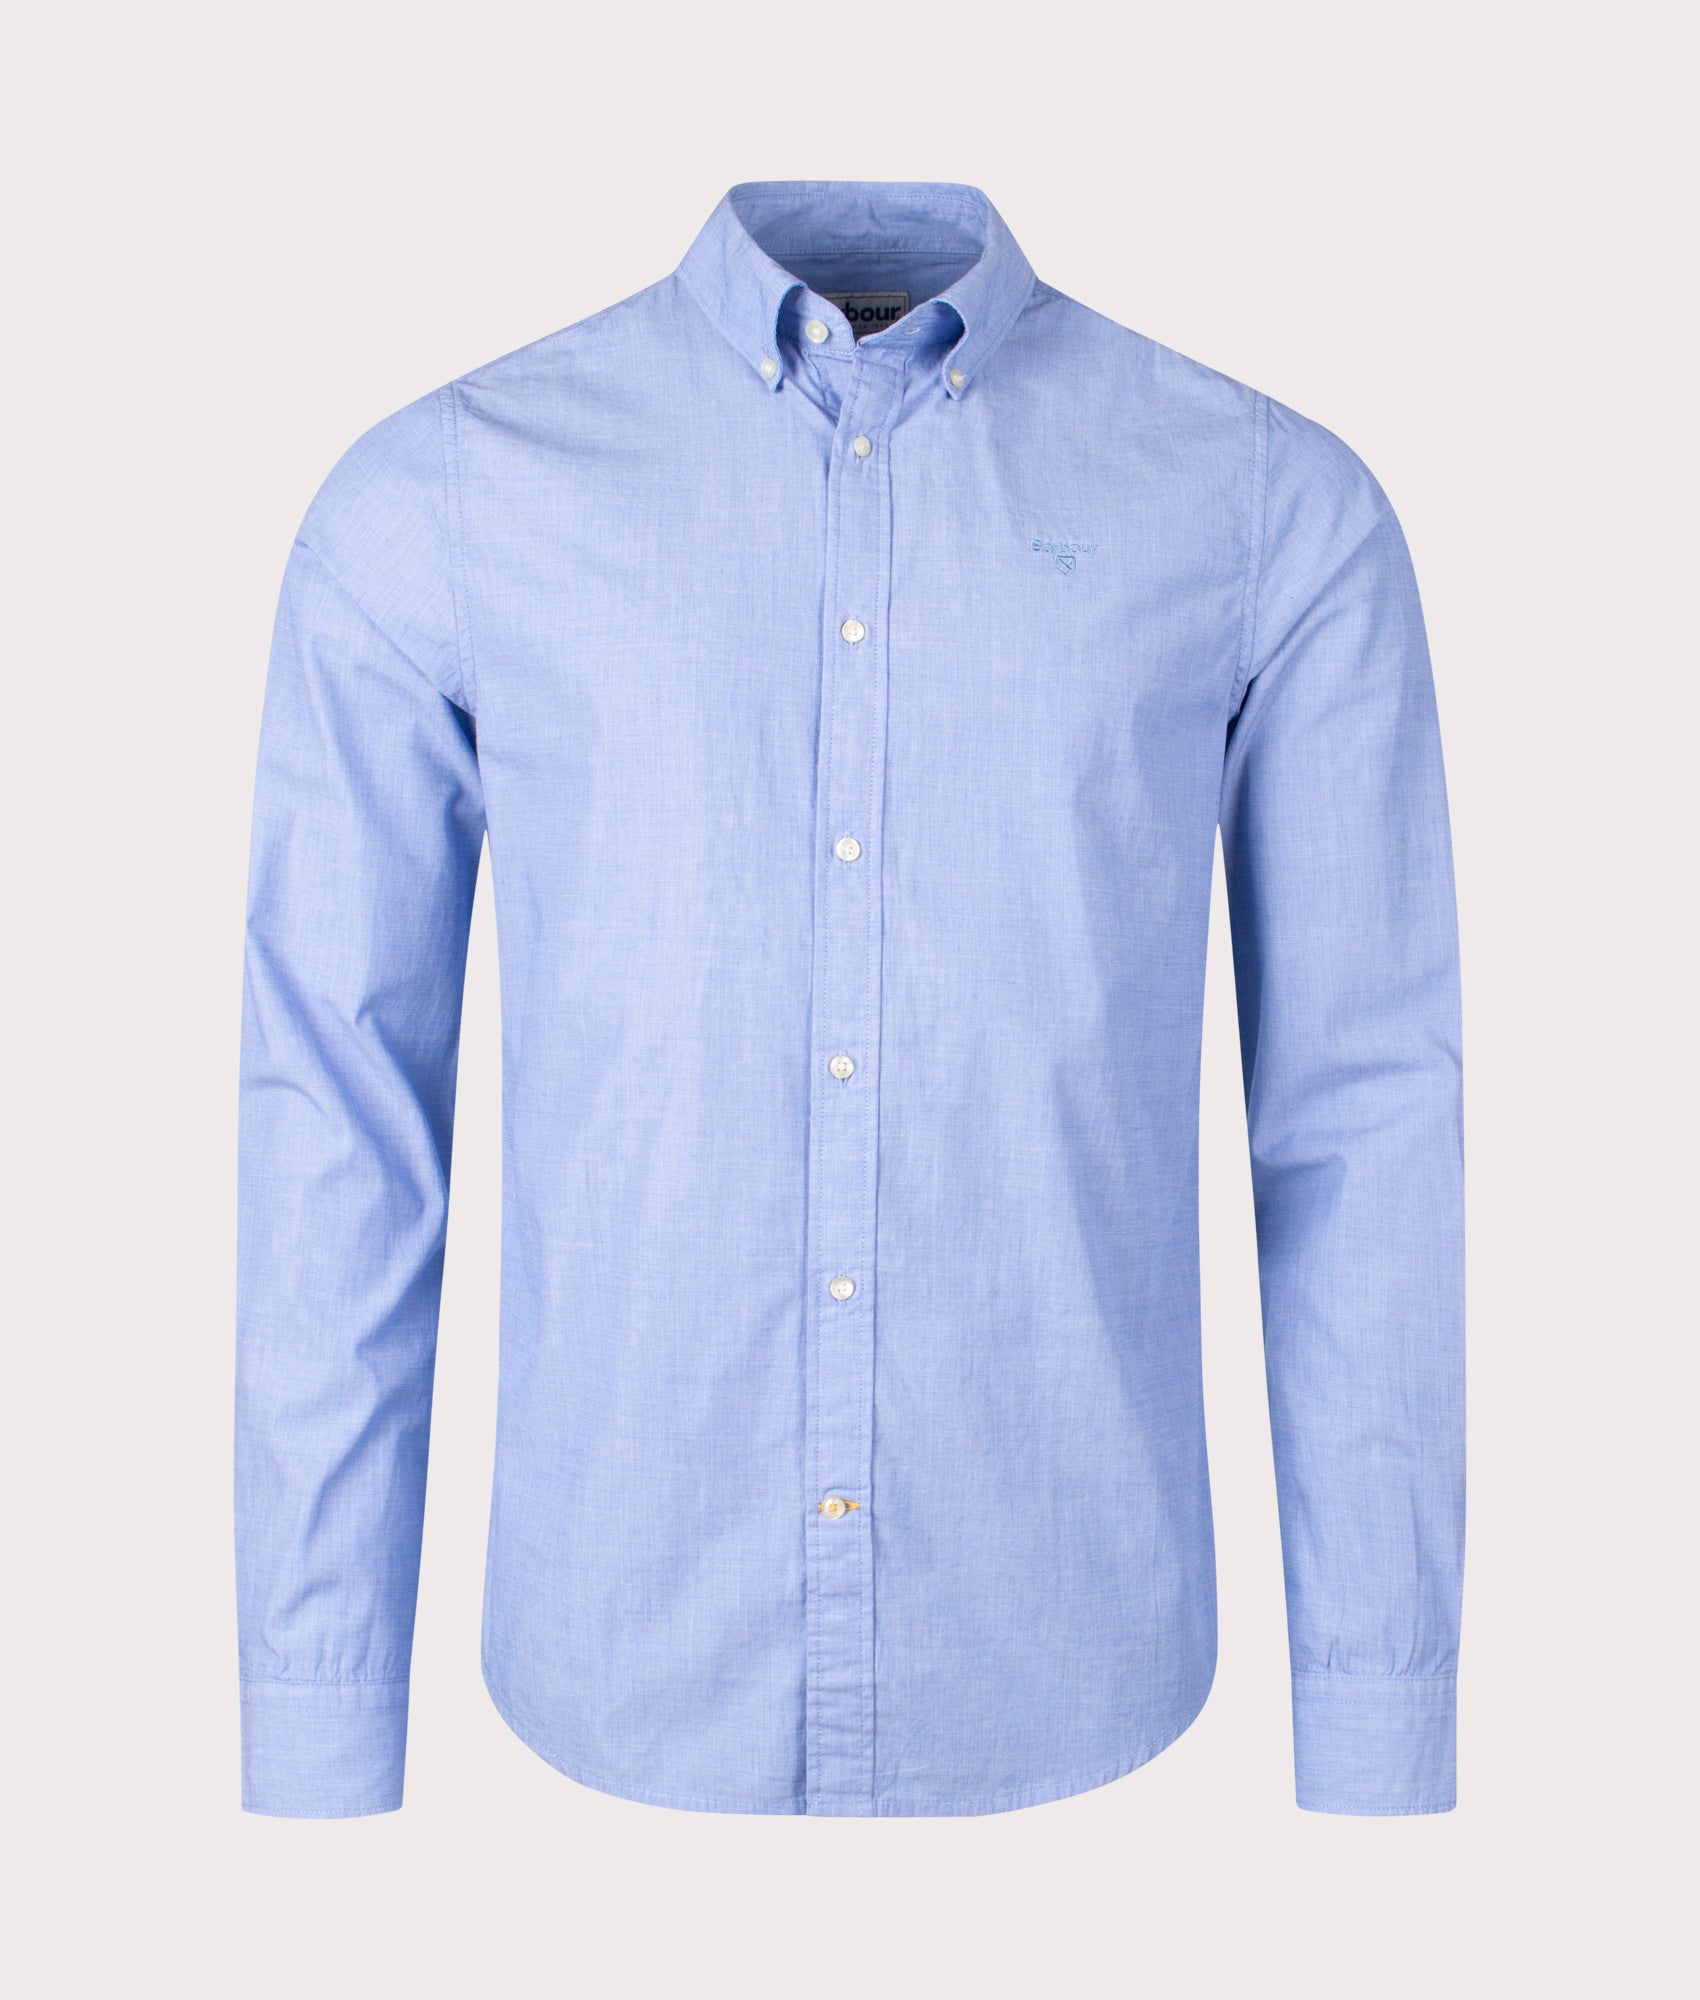 Barbour Lifestyle Mens Tonal Crest Poplin Shirt - Colour: BL32 Sky - Size: Medium